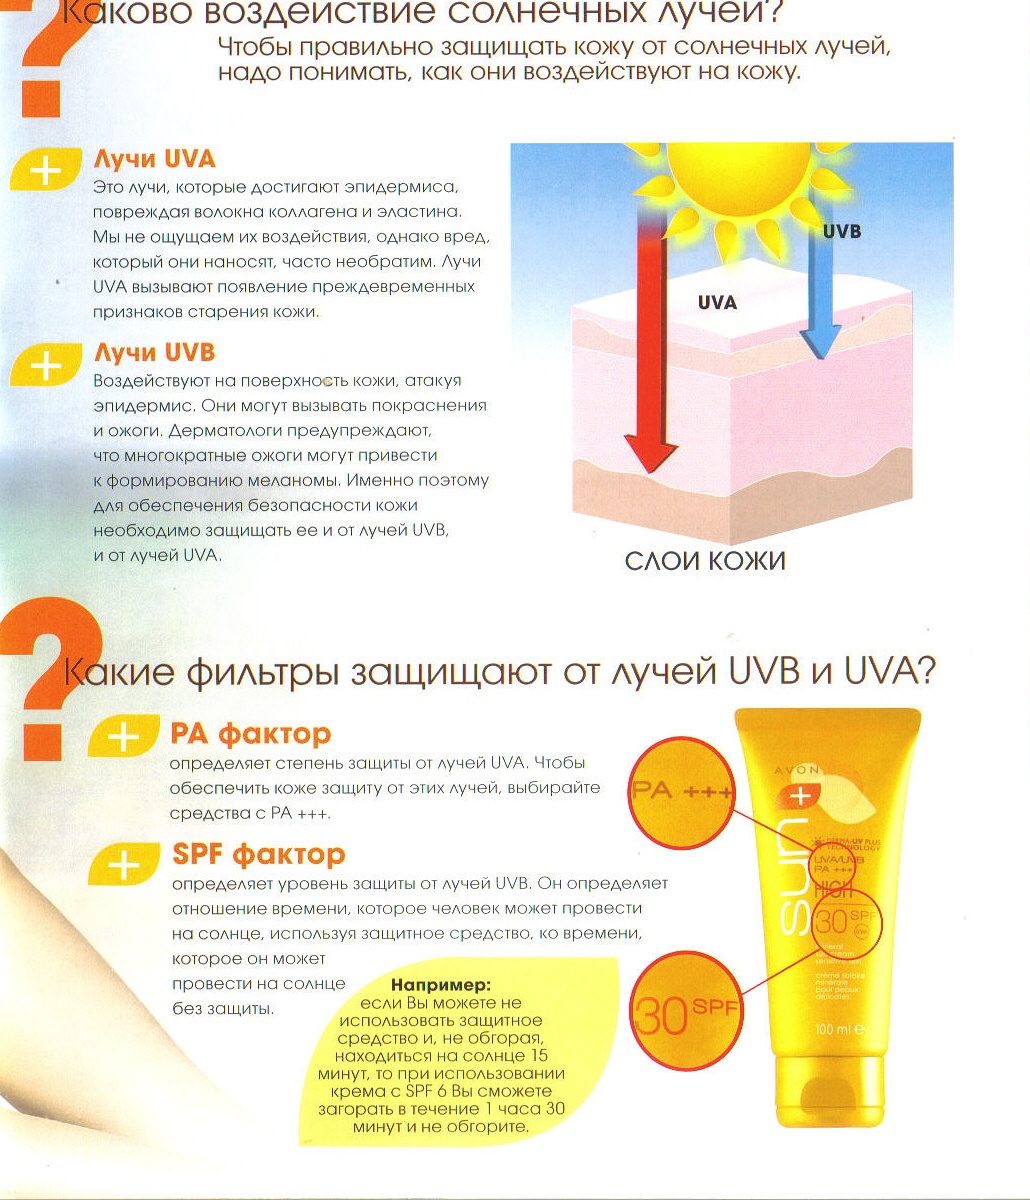 Можно ли загореть с кремом. Влияние солнечных лучей на кожу. Солнечное излучение и влияние на кожу. Защита от солнечных лучей. Воздействие солнечных лучей на кожу человека.